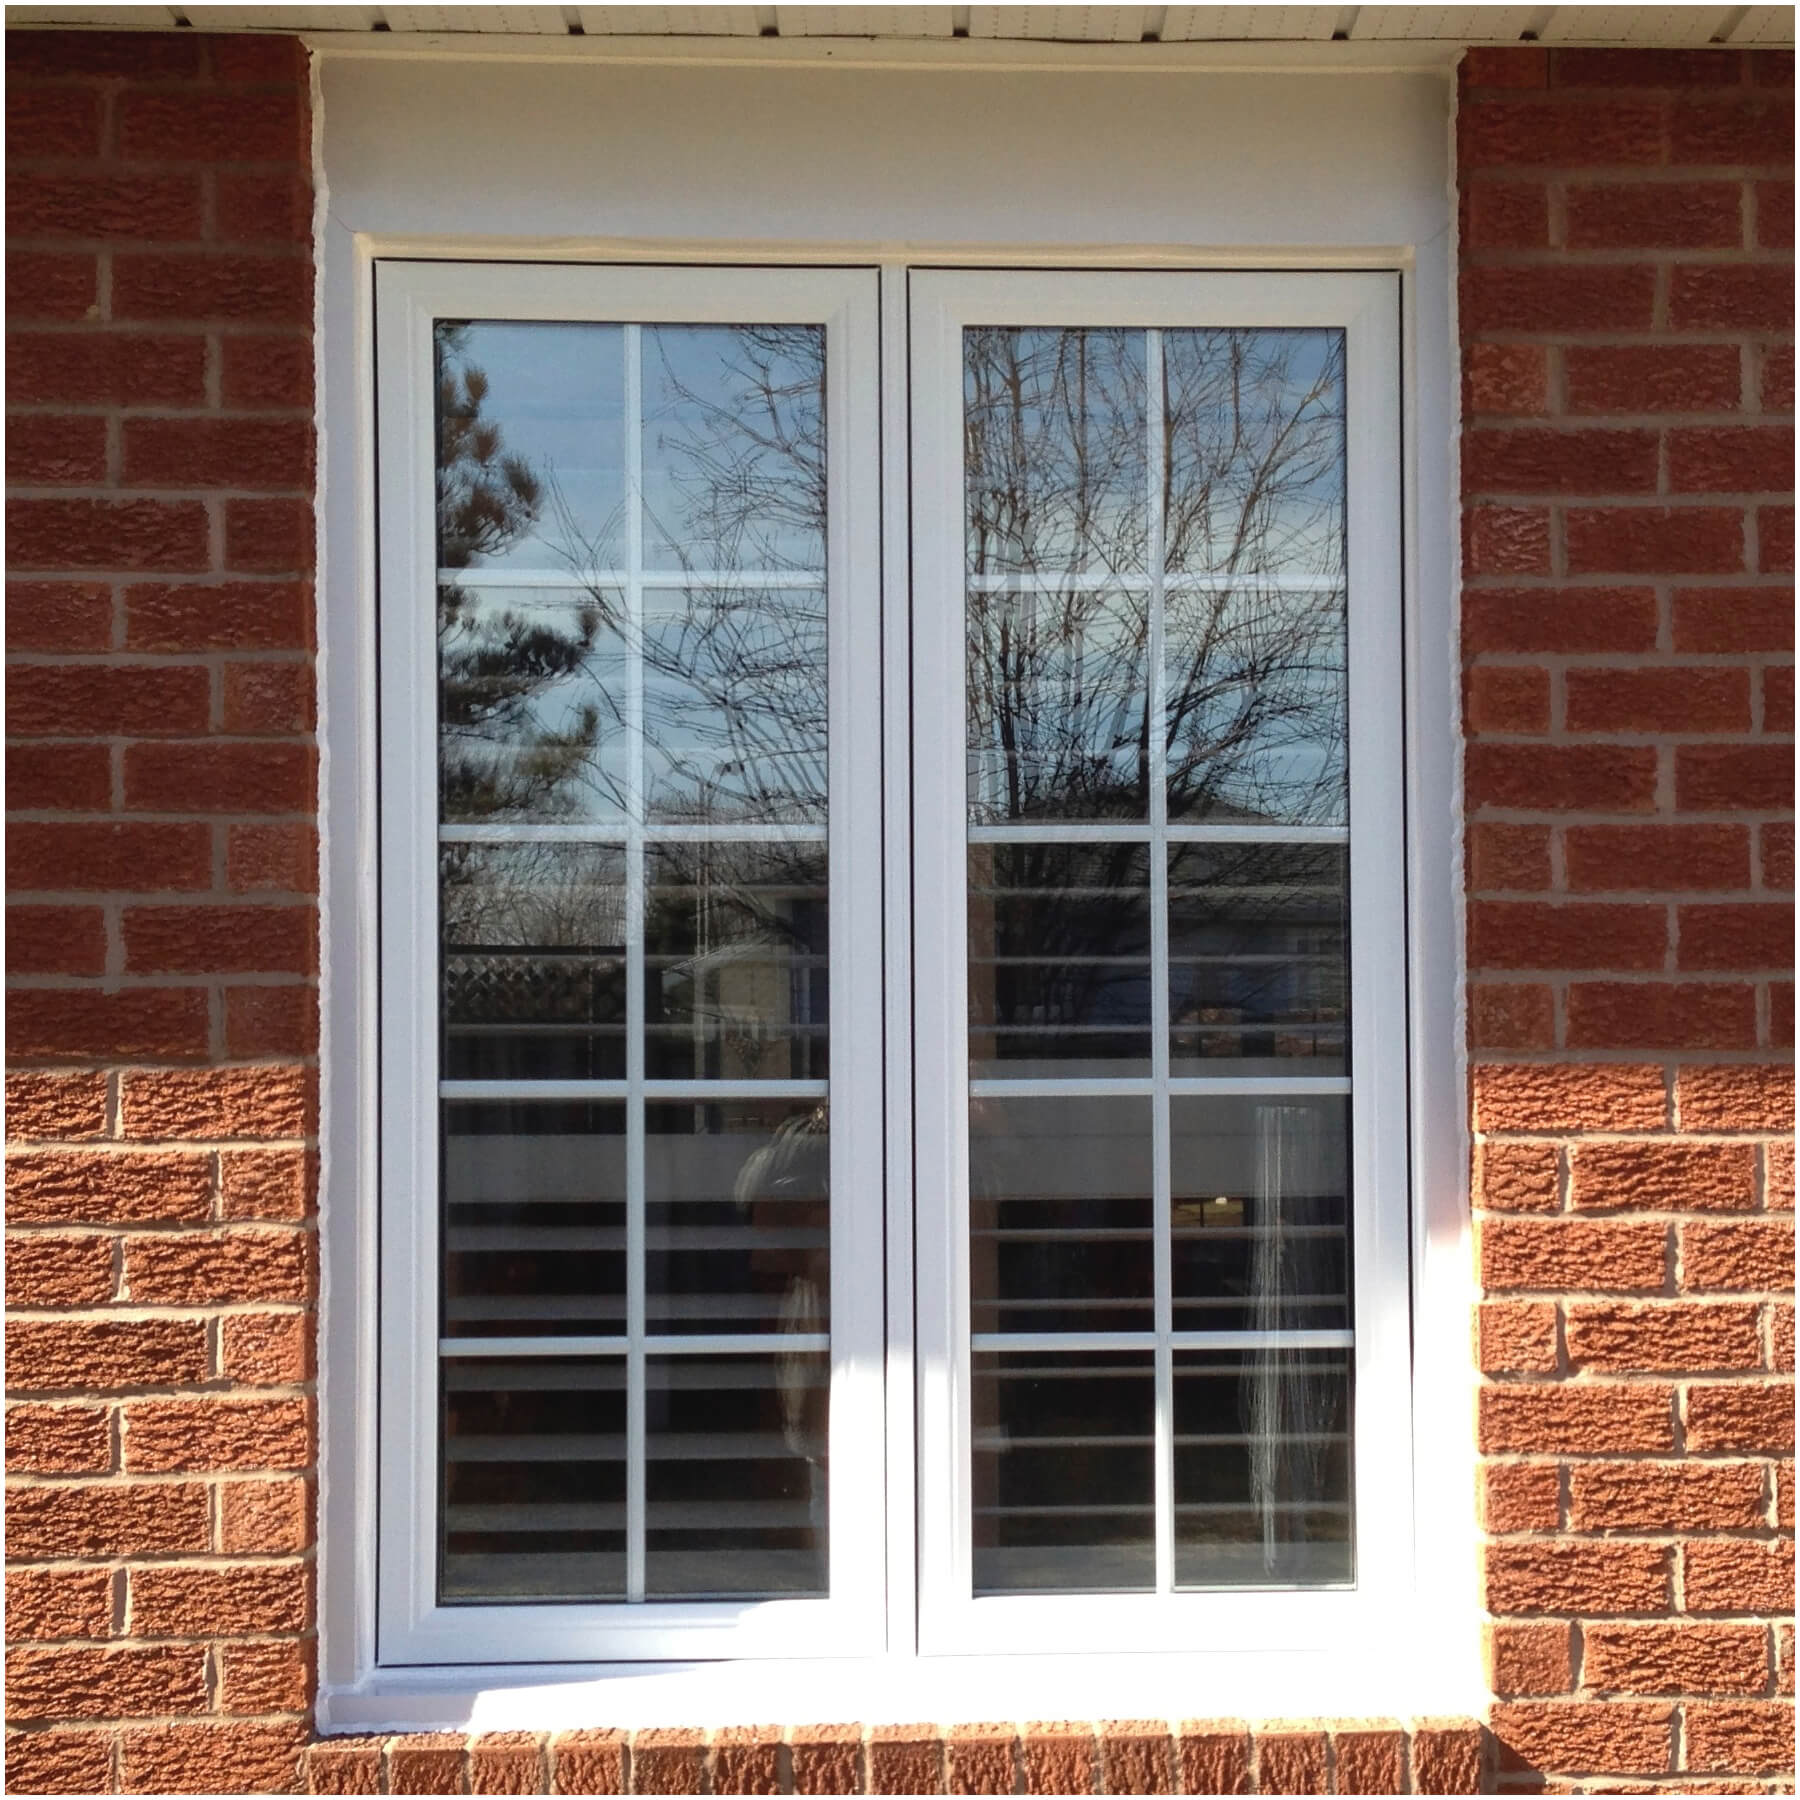 Casement windows open outward for light, fresh air and side breezes. 